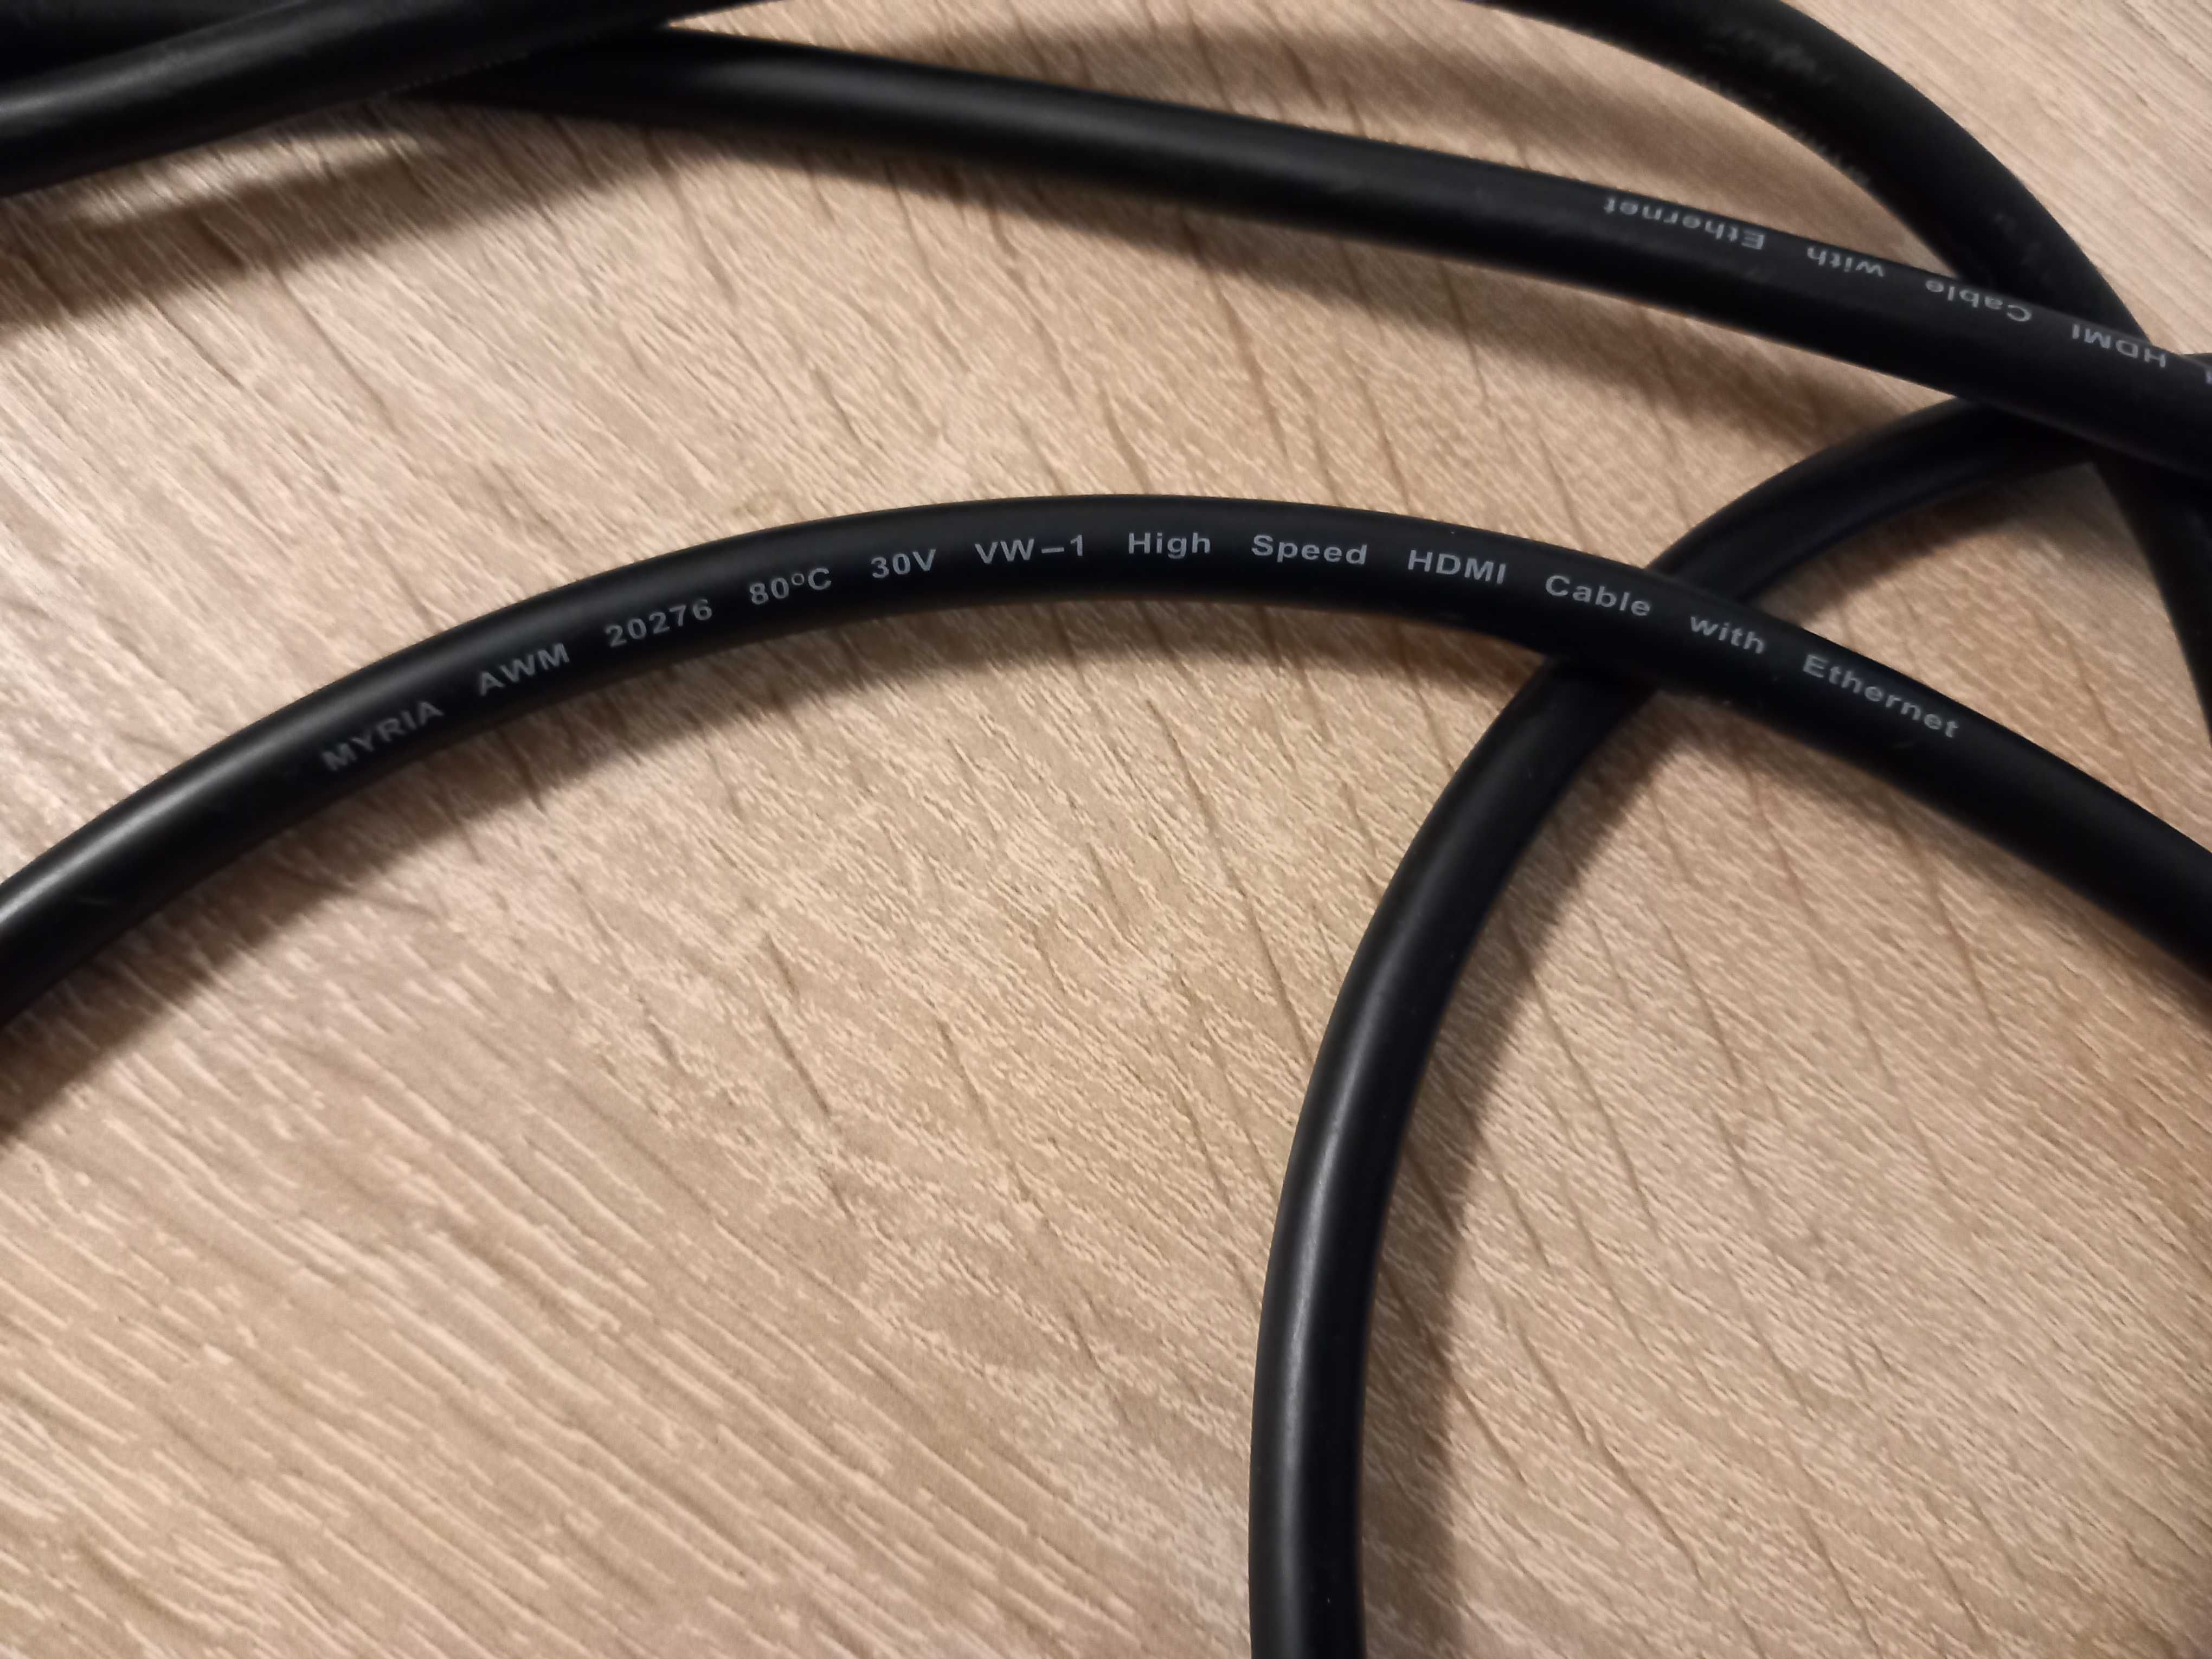 Cablu HDMI MYRIA MY2008, 3m, negru. Numai 10 lei.